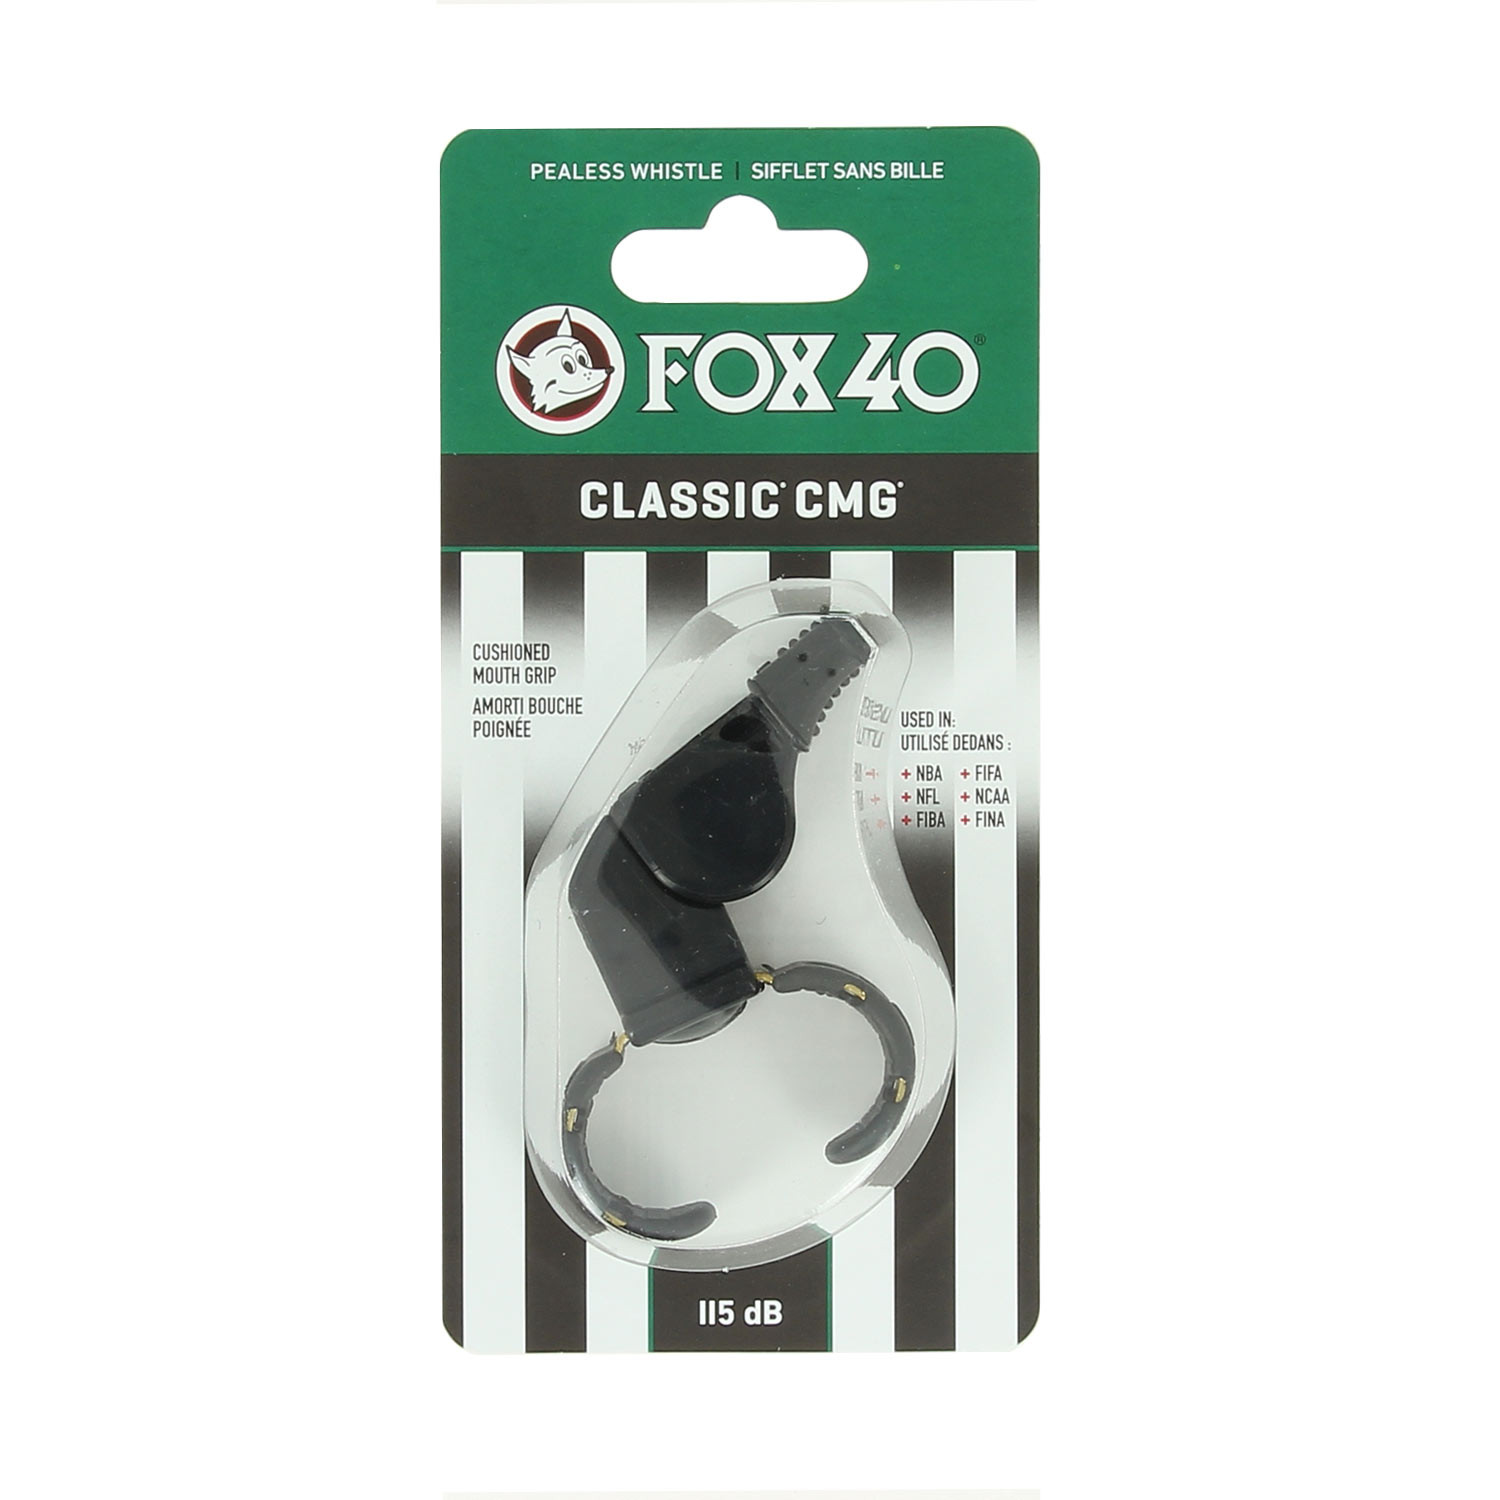 Silbato clásico Fox 40